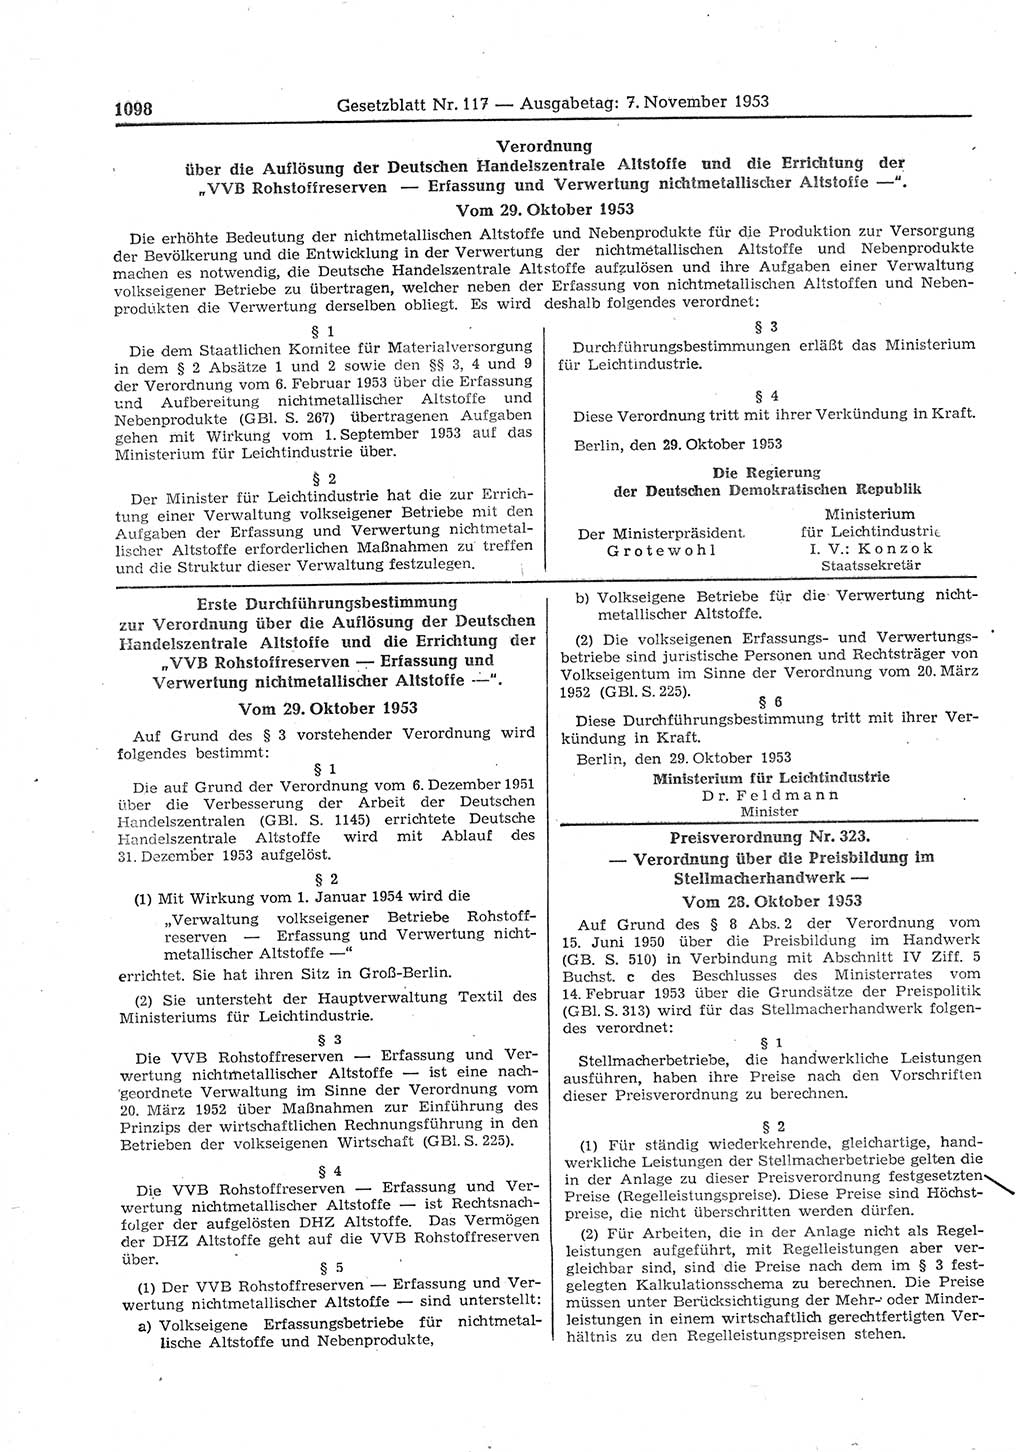 Gesetzblatt (GBl.) der Deutschen Demokratischen Republik (DDR) 1953, Seite 1098 (GBl. DDR 1953, S. 1098)